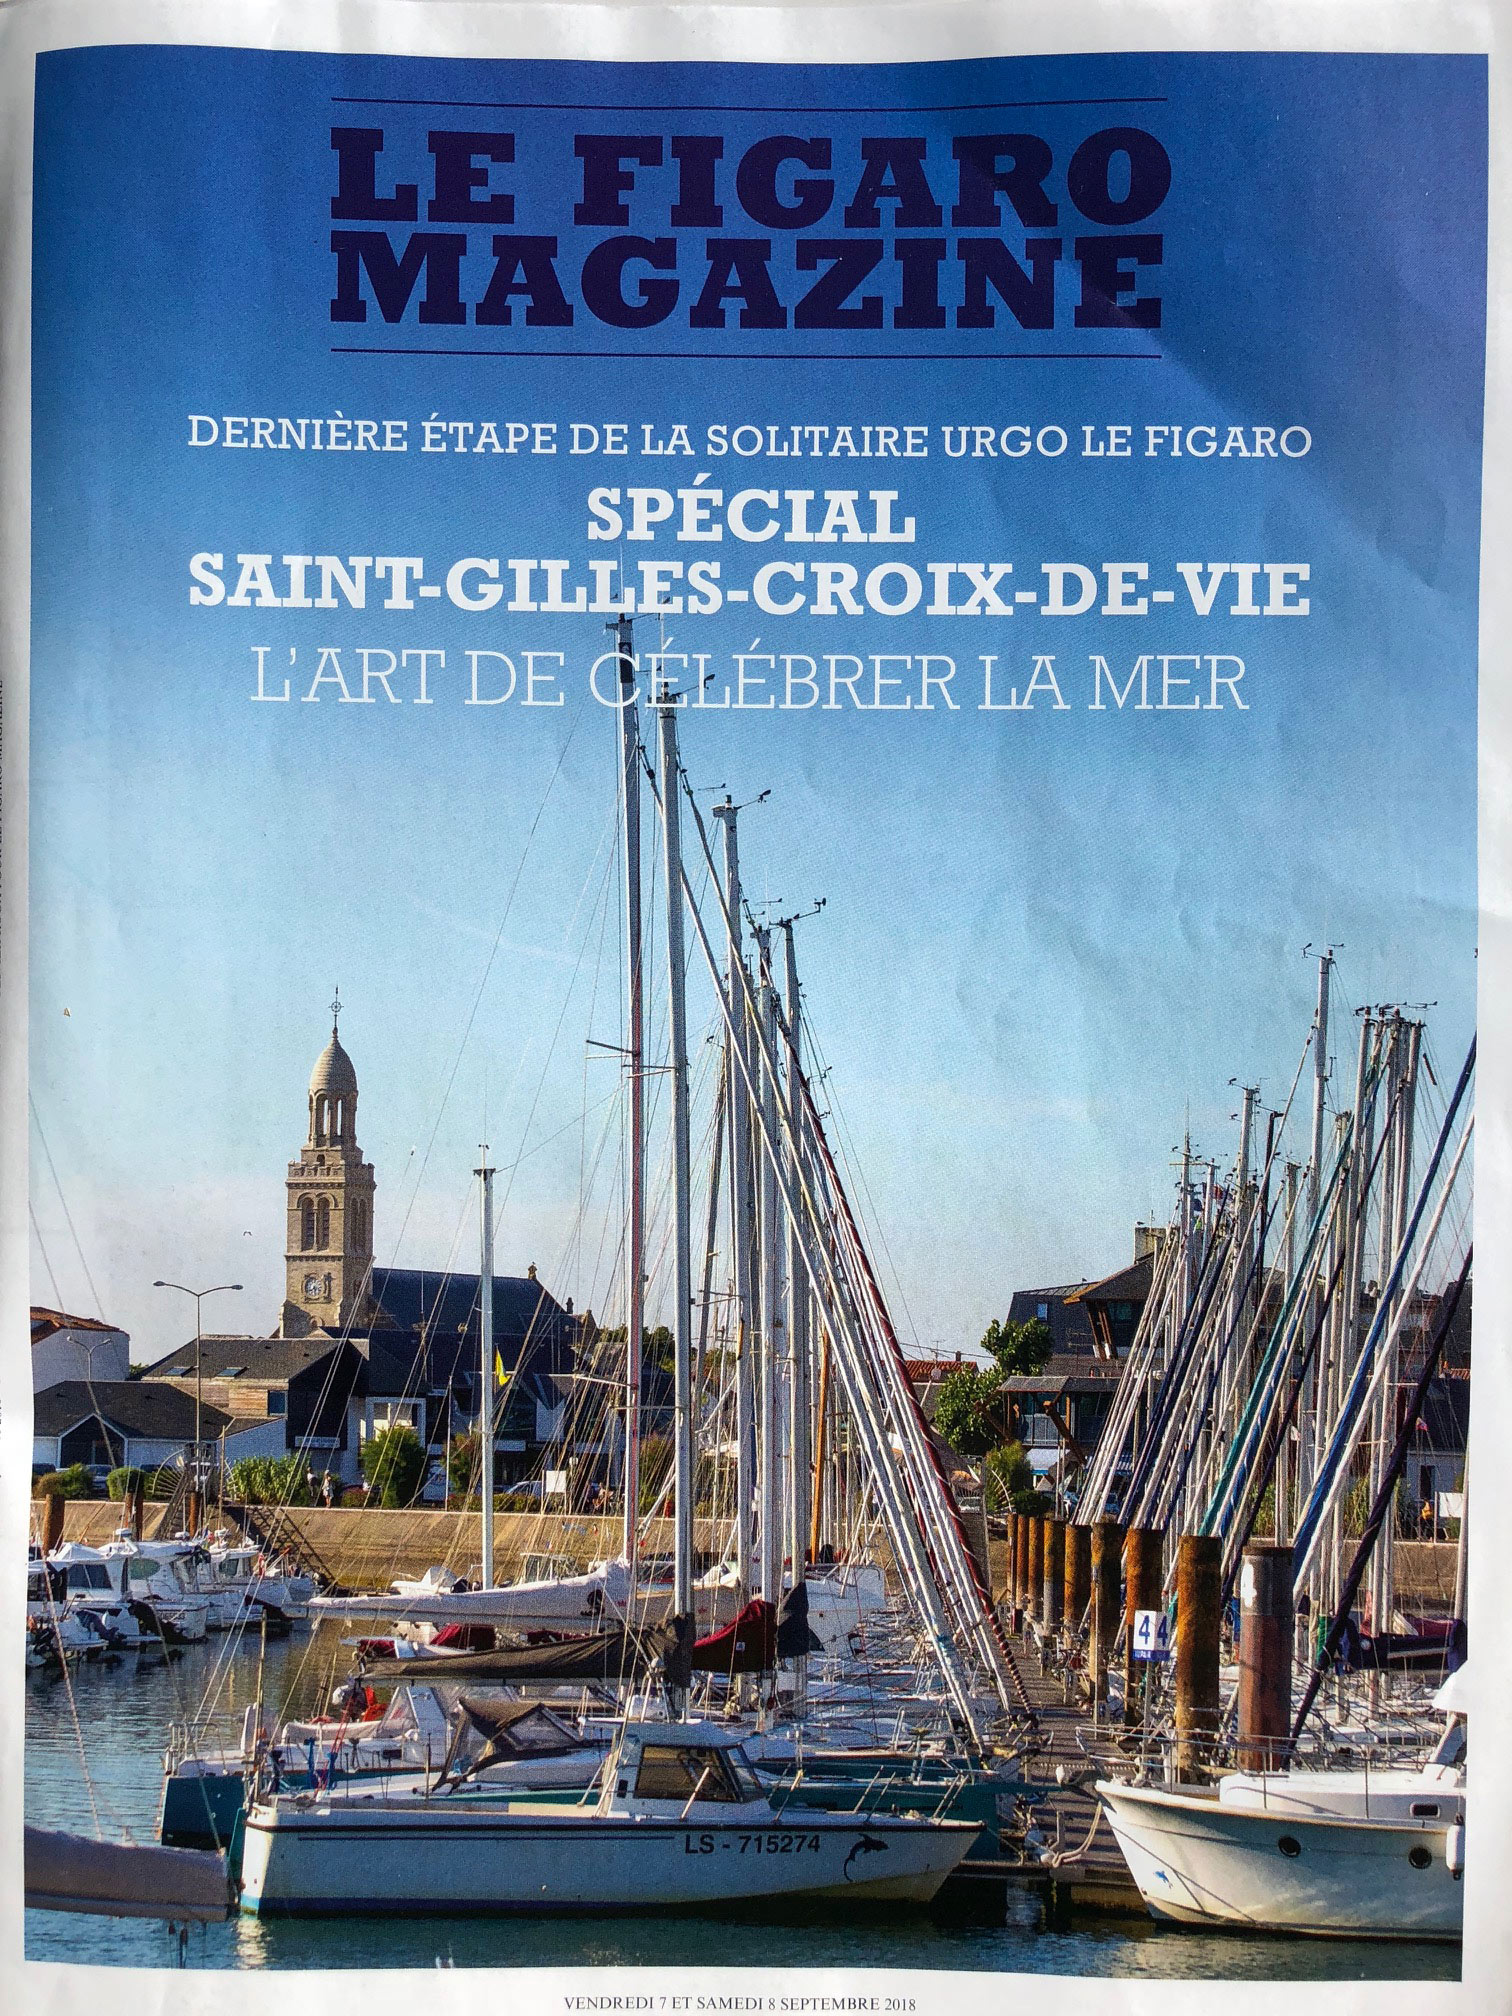 Figaro Magazine - Saint-Gilles-Croix-de-Vie - 7 septembre 2018